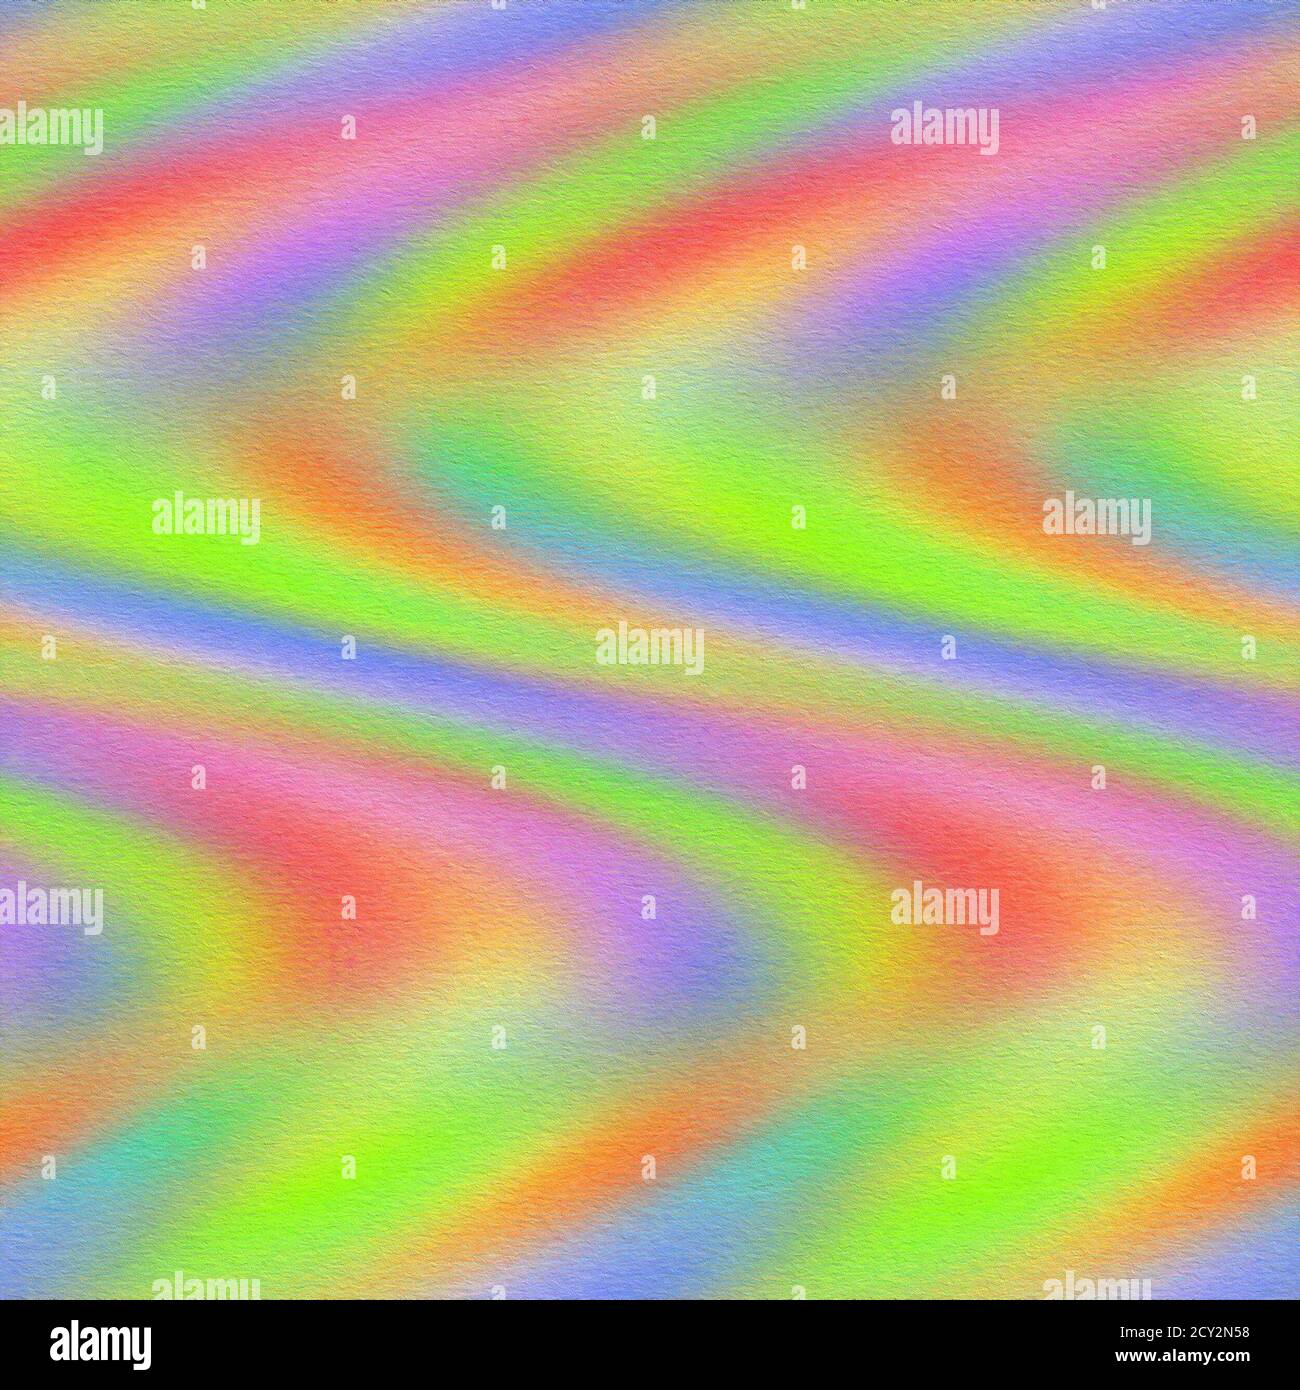 Farbiger, farbiger Hintergrund aus verlaufendem Mesh in hellen Regenbogenfarben. Abstraktes, unscharfes, glattes Bild. Stockfoto